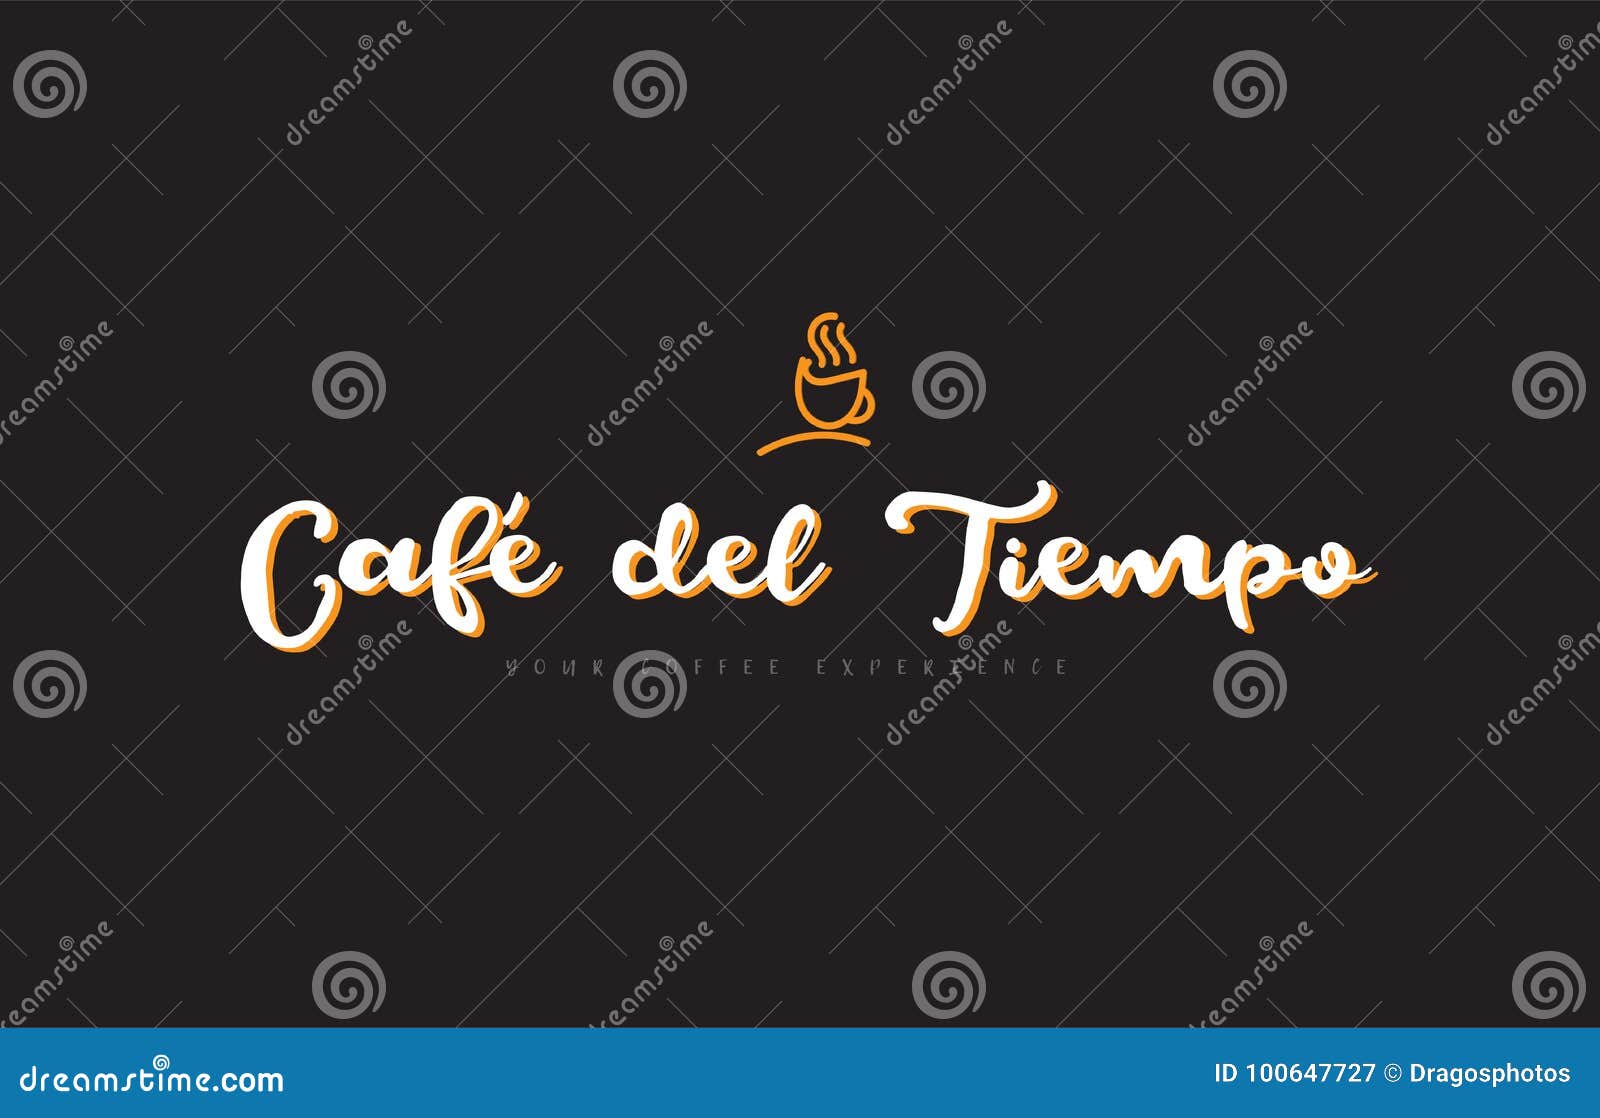 cafe del tiempo word text logo with coffee cup  idea typography